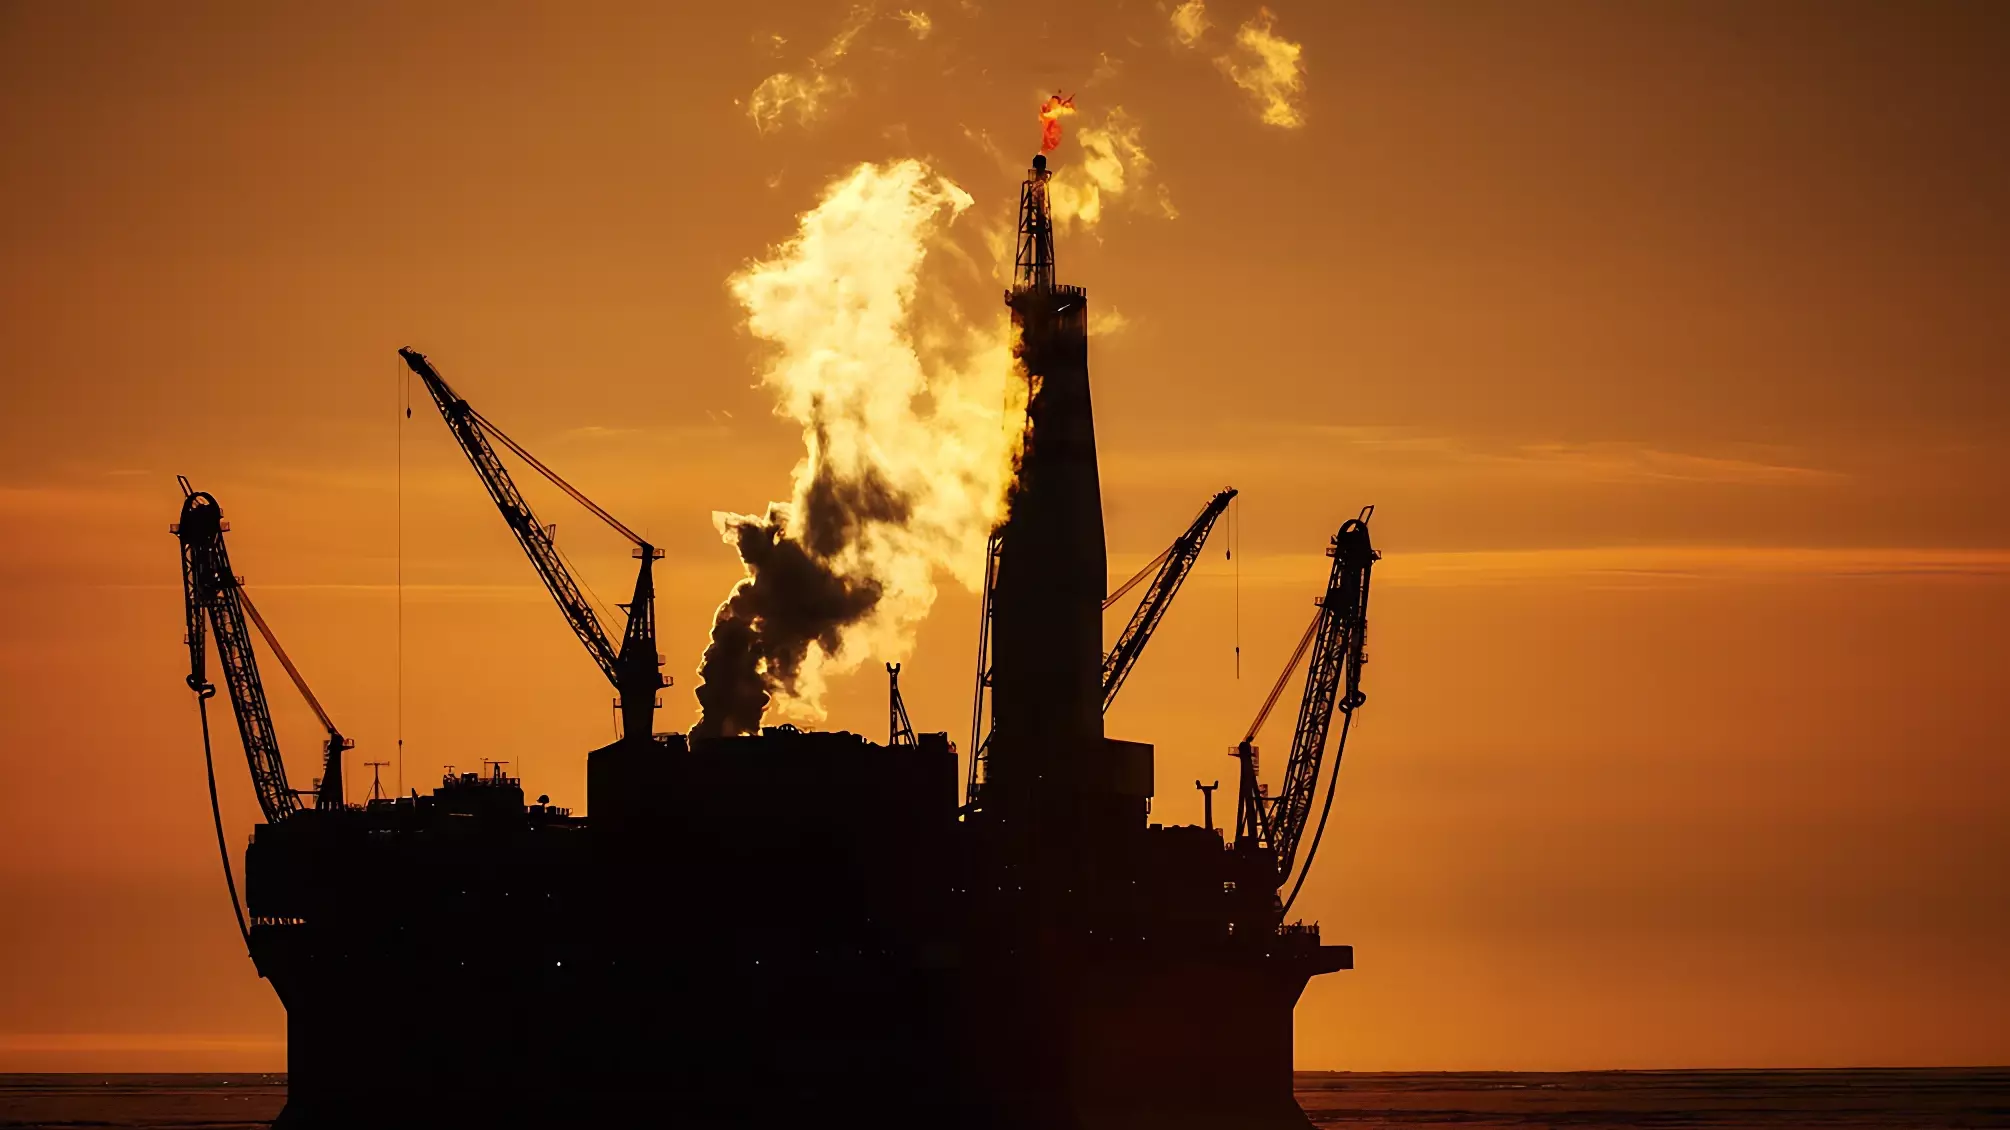 ДНР возобновляет поиски нефти и газа в Азовском море